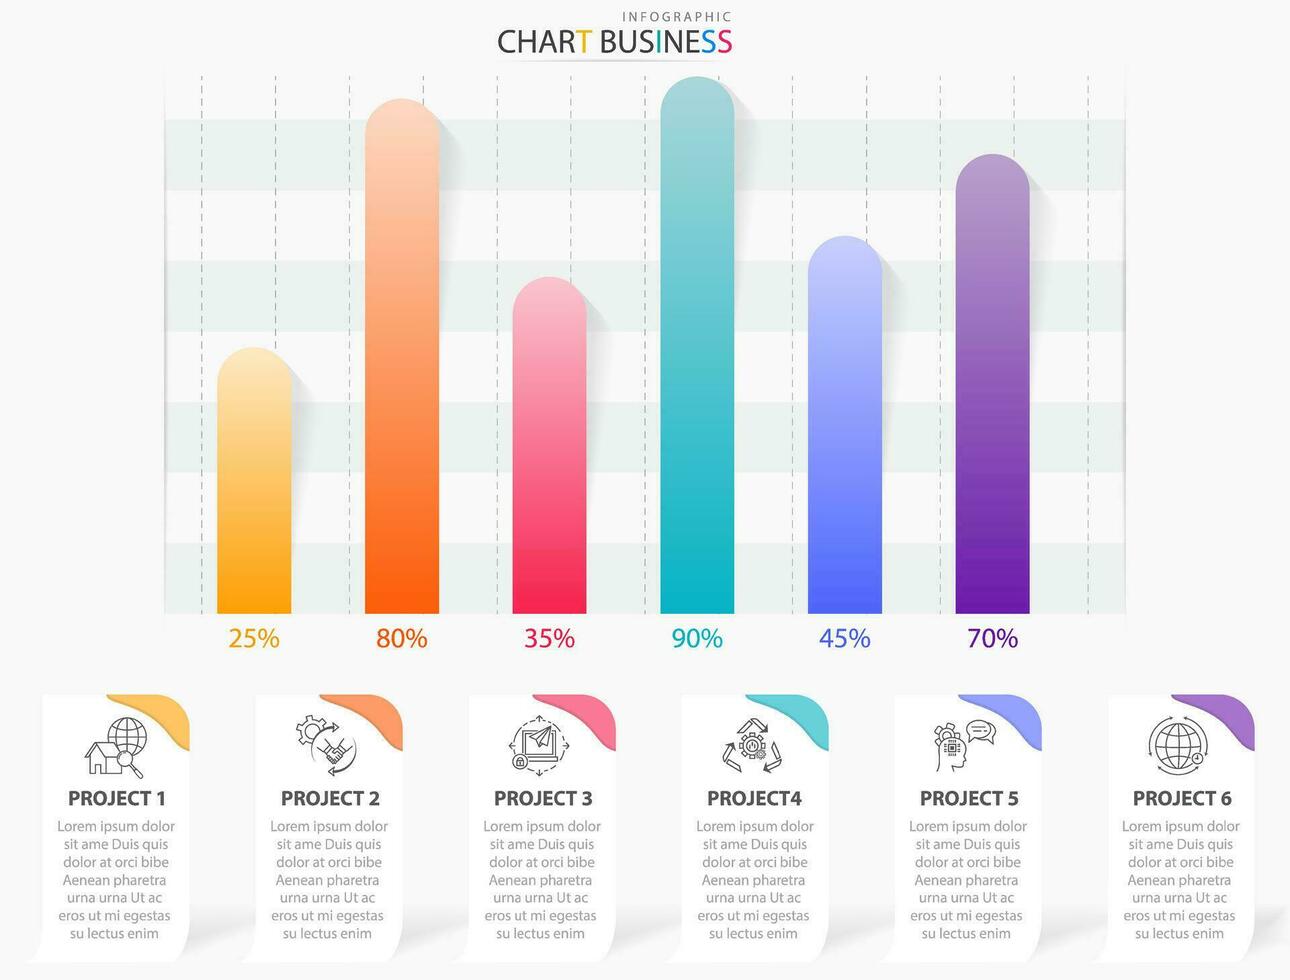 företag data marknadsföra infographic Graf och Diagram vektor